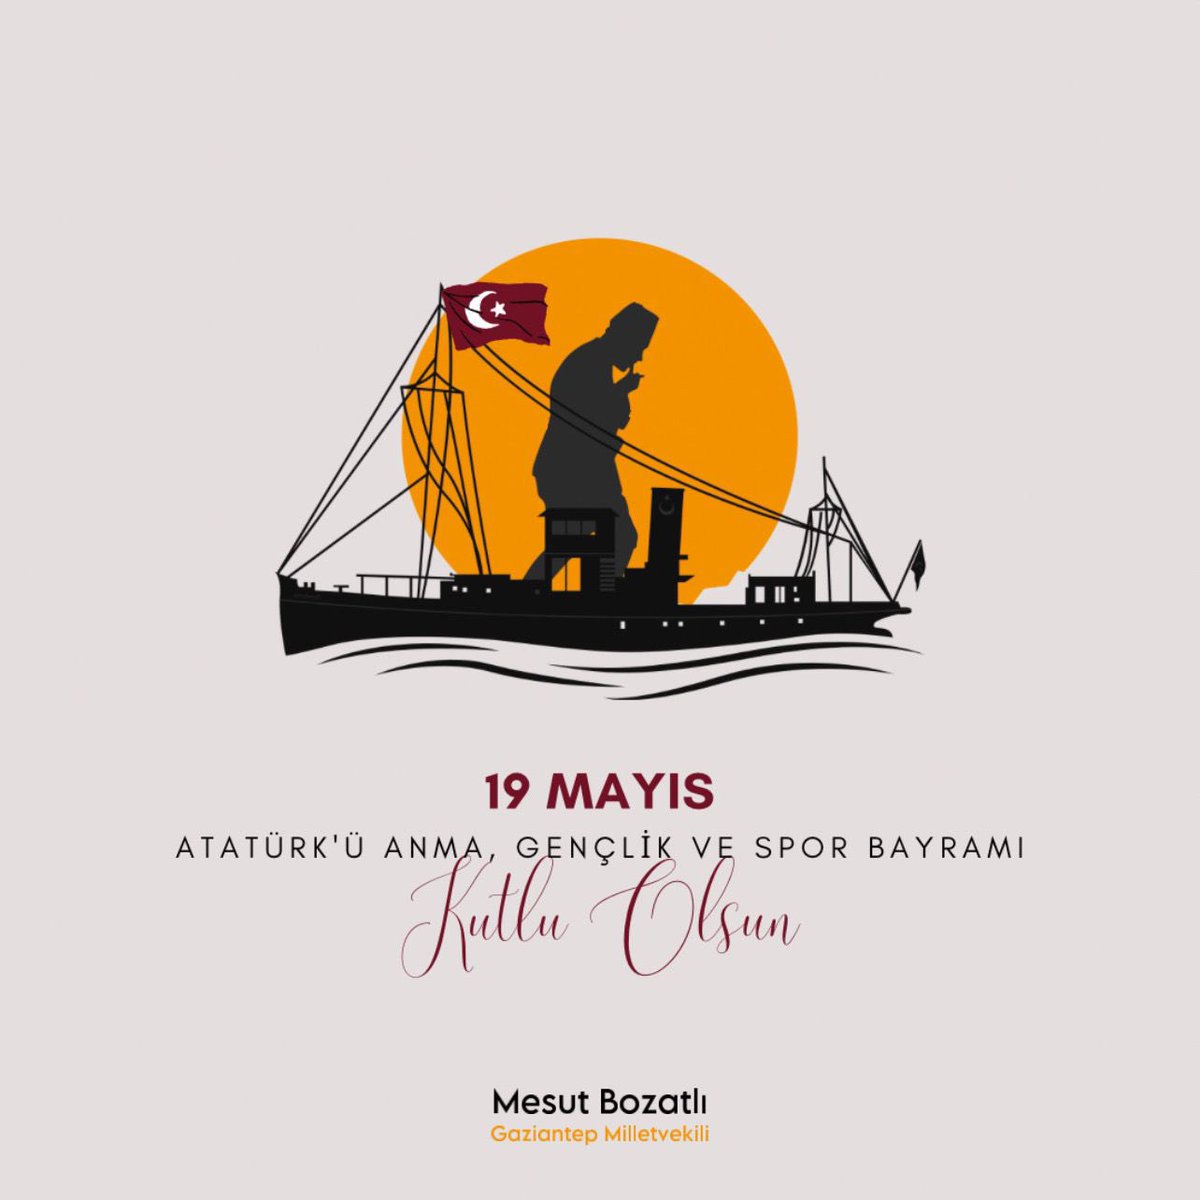 #19Mayıs Atatürk'ü Anma, Gençlik ve Spor Bayramı Kutlu olsun. Başta Cumhuriyetimizin banisi Gazi Mustafa Kemal Atatürk olmak üzere, bize bu toprakları vatan kılan tüm kahramanlarımızı rahmetle, minnetle ve şükranla yad ediyorum. Tarihimizden aldığımız güçle, 19 Mayıs ruhunu